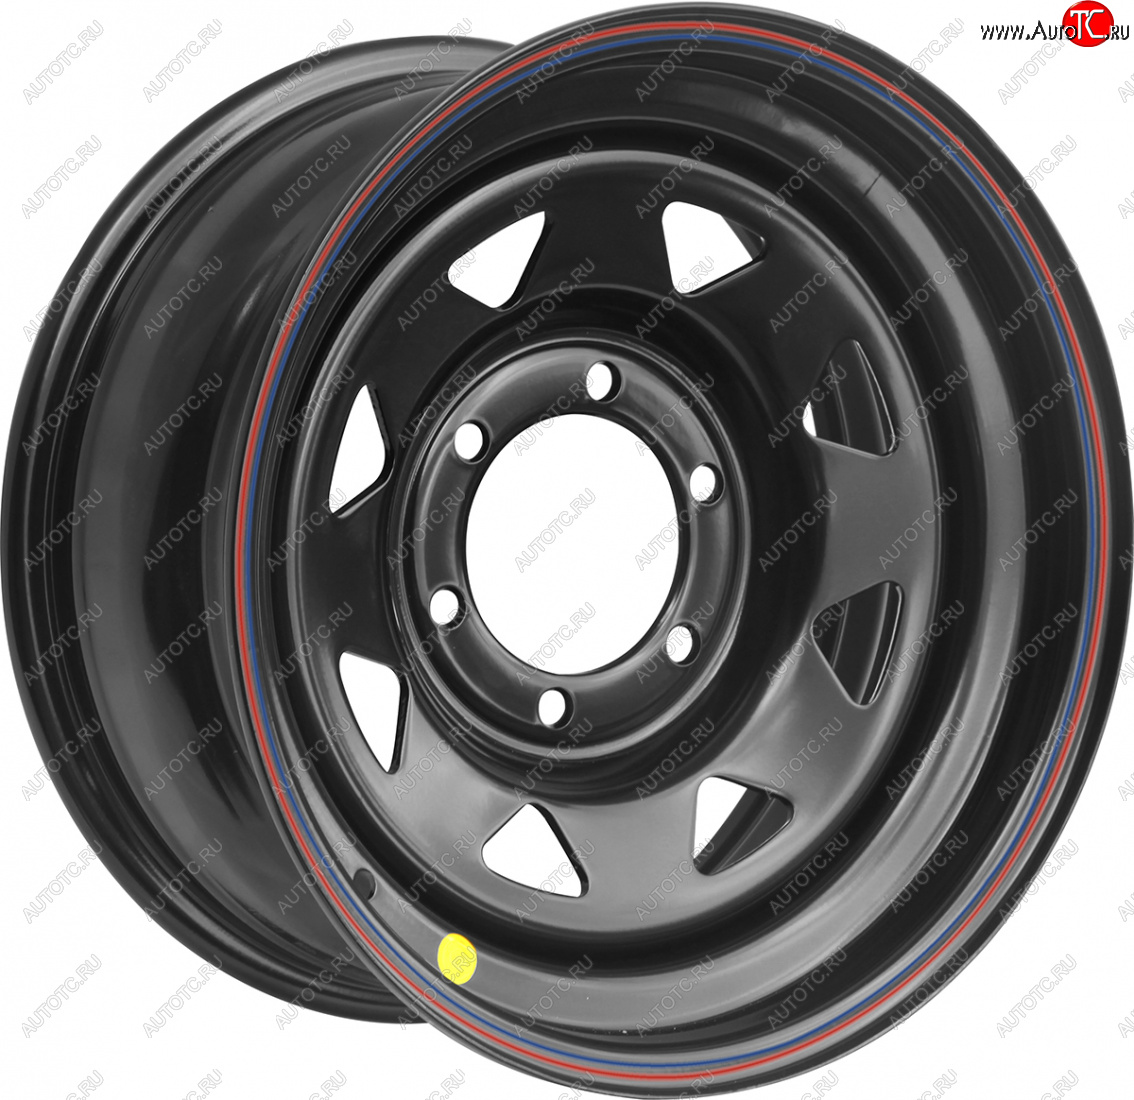 4 399 р. Штампованый диск OFF-ROAD Wheels (стальной усиленный, треугольник мелкий - черный). 7.0 x 16 Chevrolet Malibu 8 (2013-2015) 5x110.0xDIA110.0xET0.0 